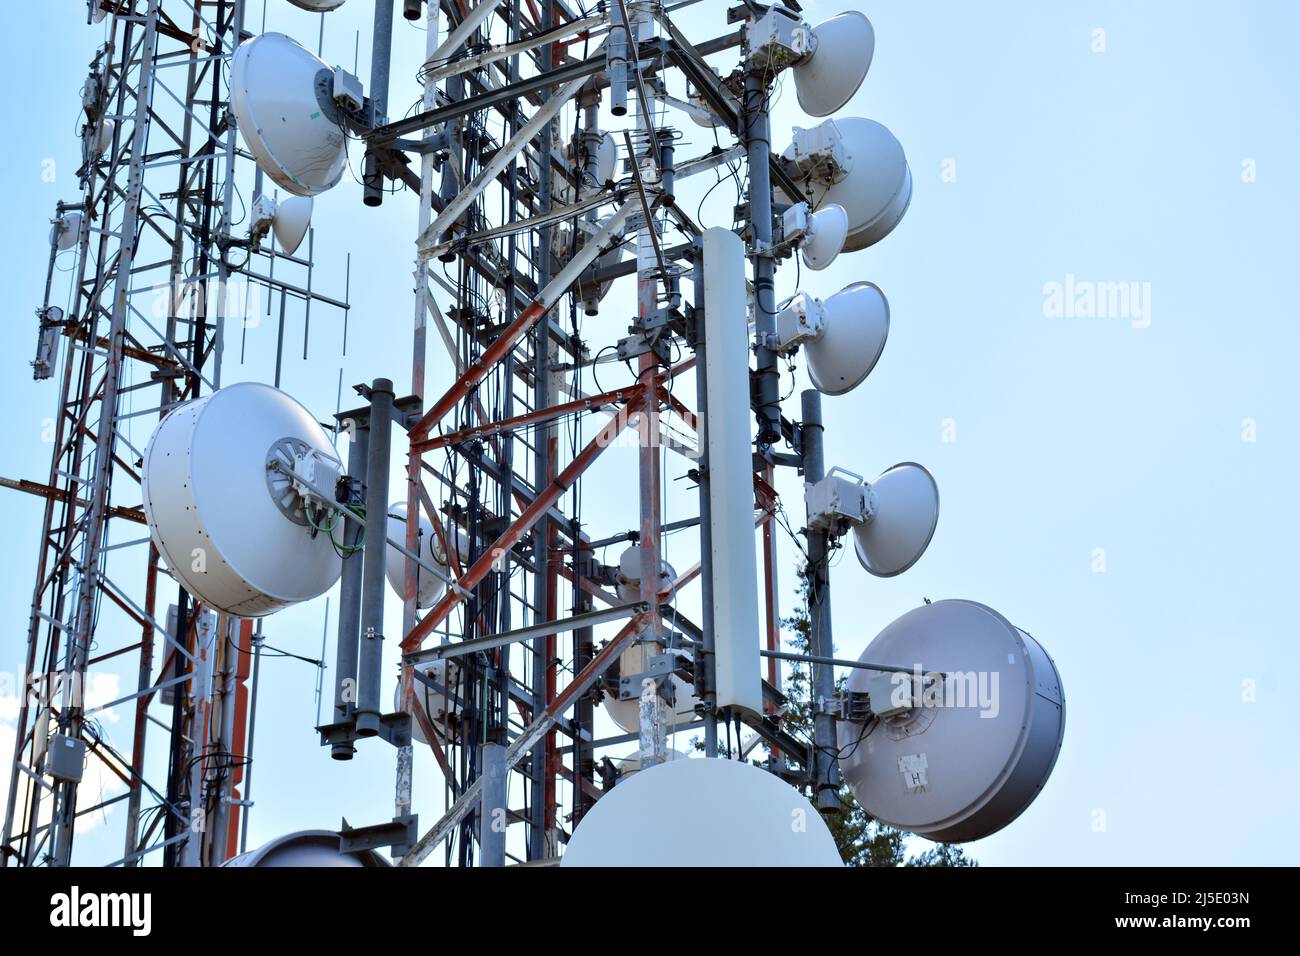 Detalle de una torre de telecomunicaciones Stock Photo